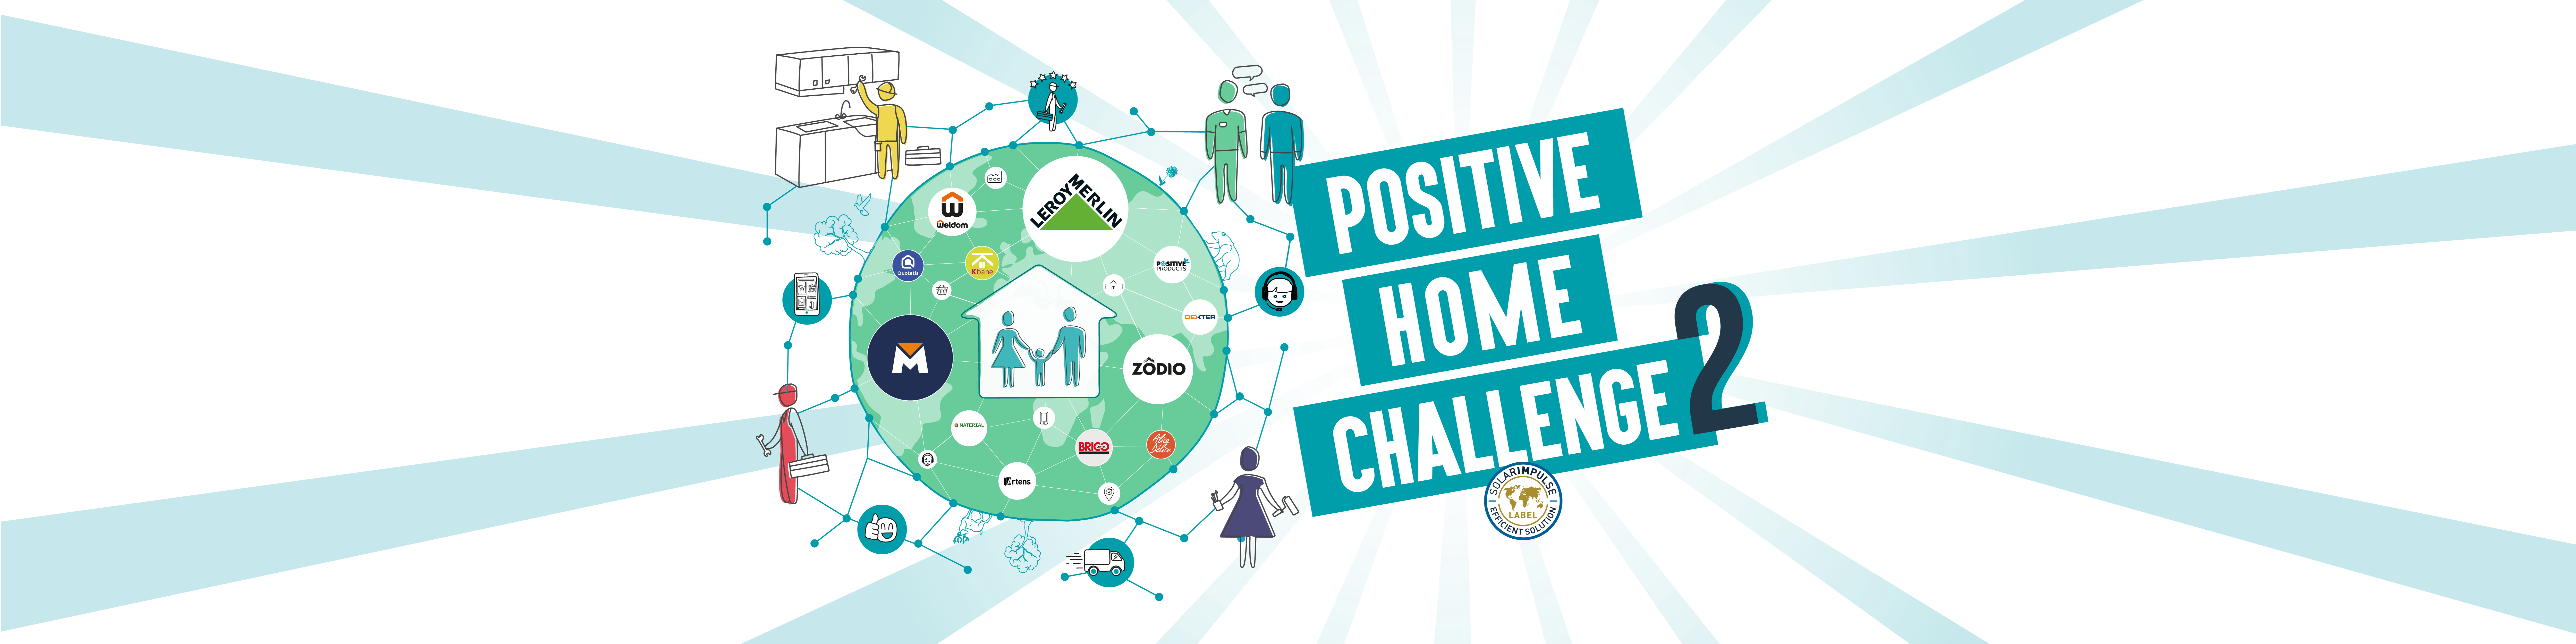 POSITIVE HOME CHALLENGE 2 - 2400x600px avec label